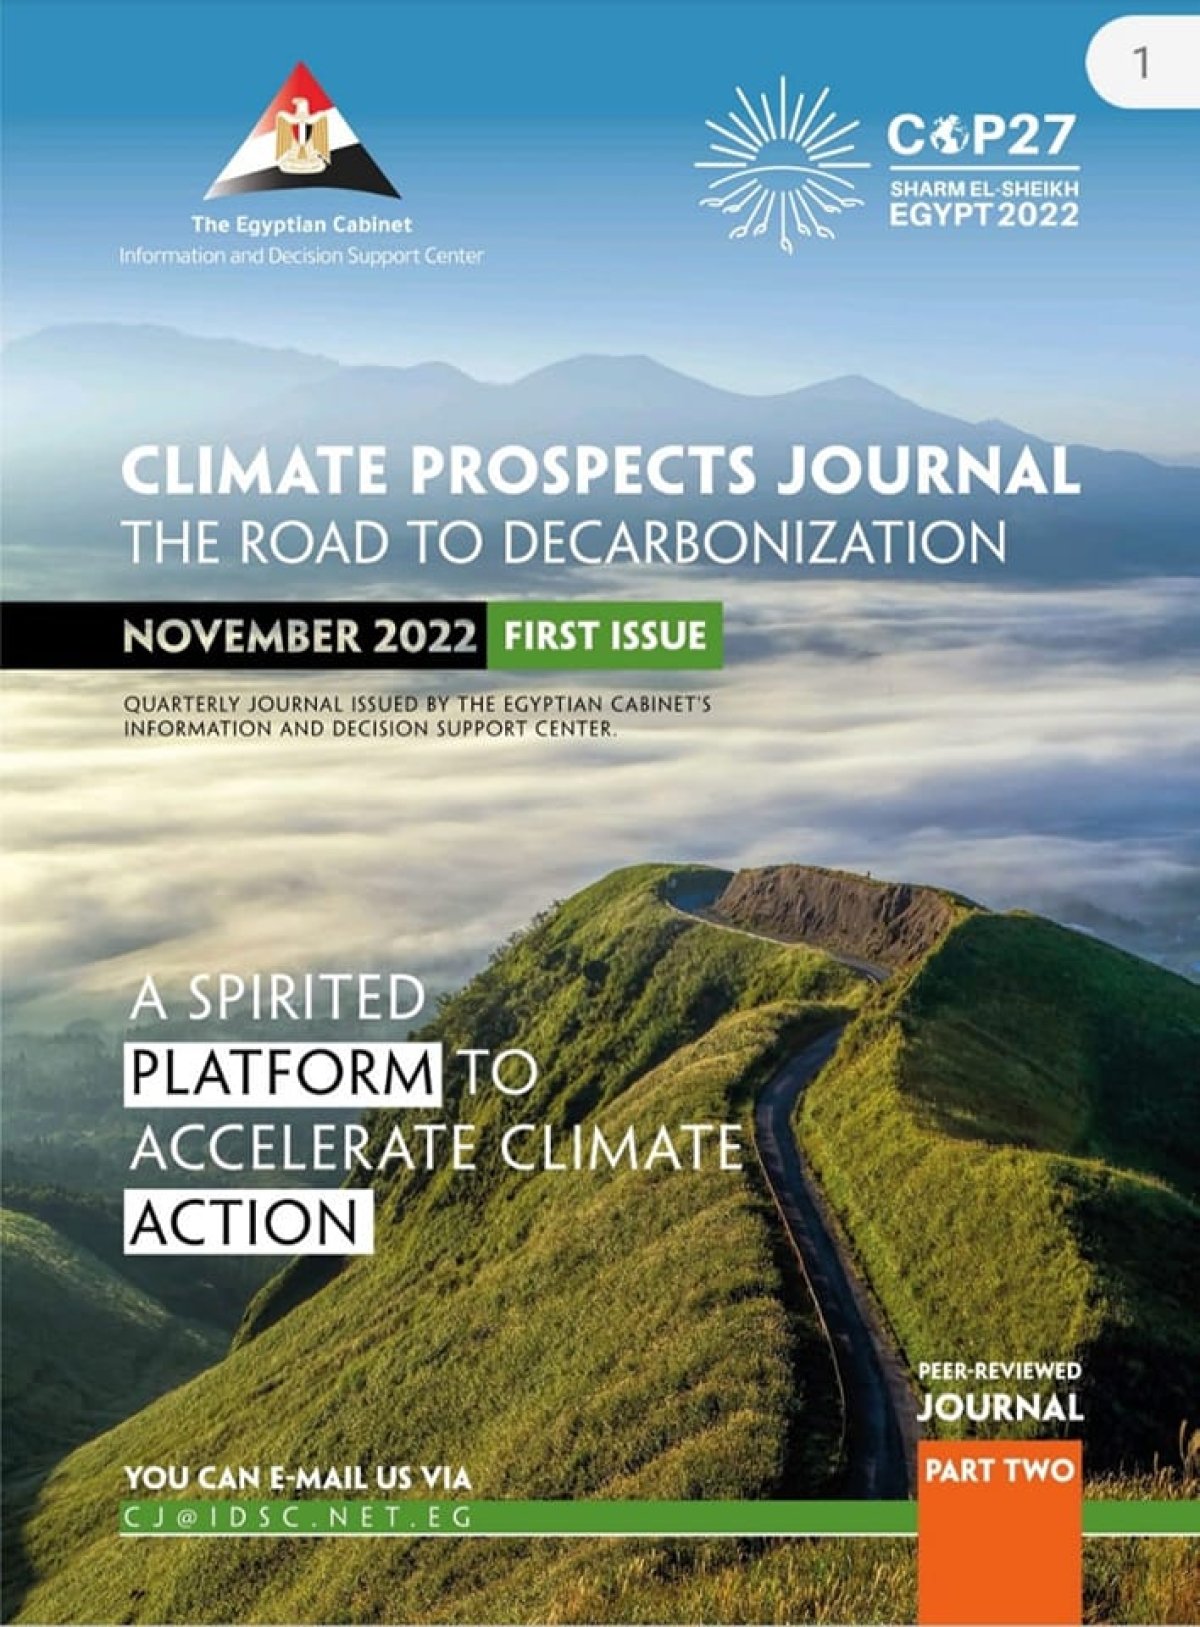 على هامش استضافة مصر لمؤتمرCOP27: مدبولي  يدشن مجلة " آفاق المناخ" كإصدارة جديدة لمركز معلومات مجلس الوزراء